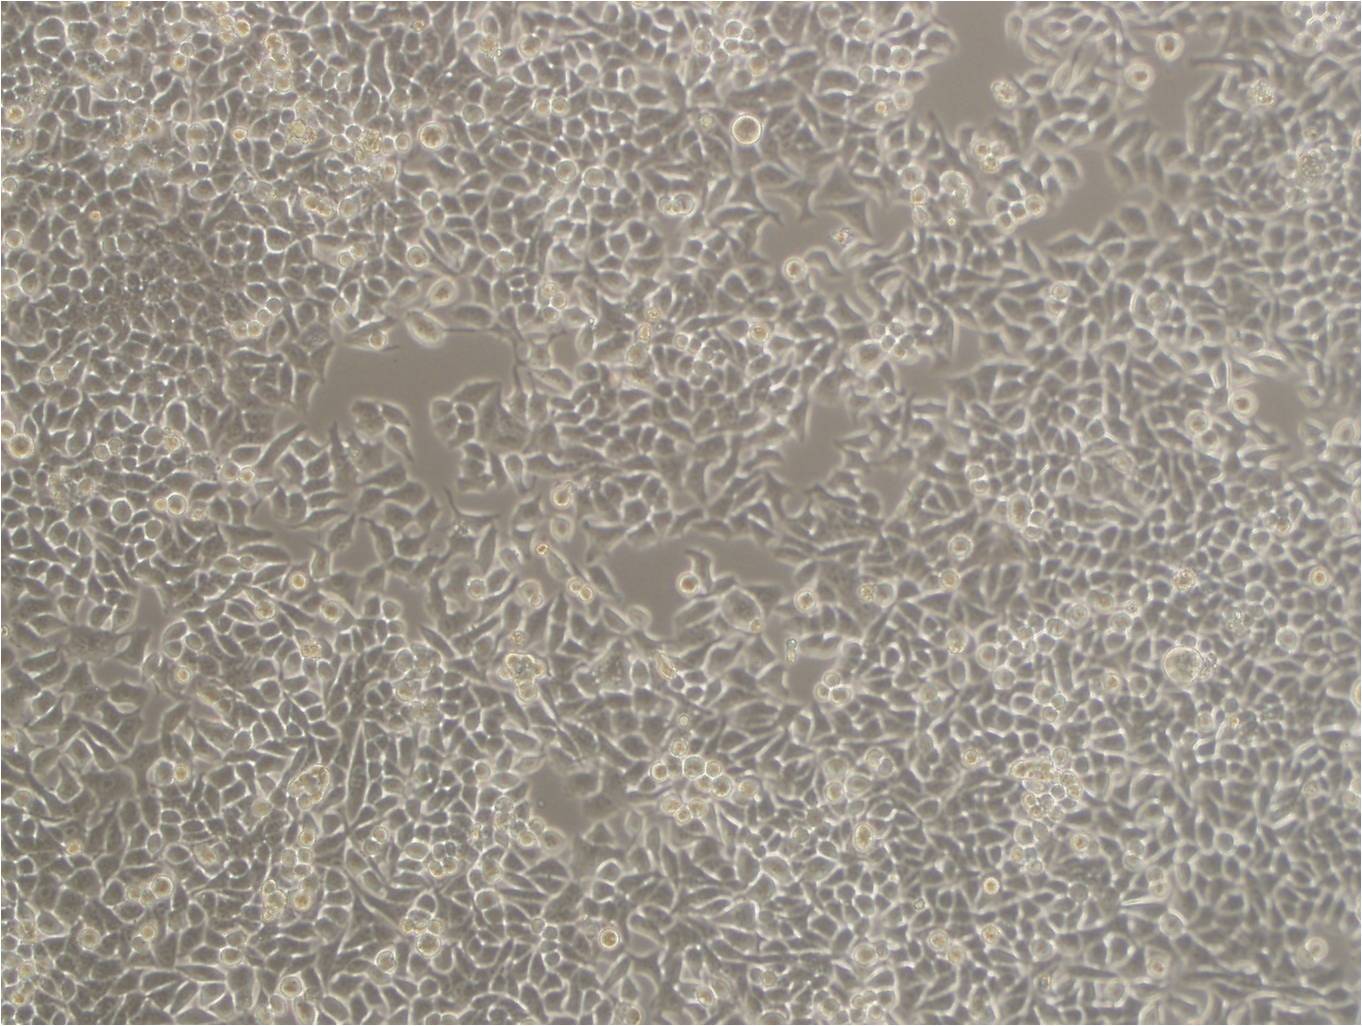 CC-LP-1 Cell|人胆管癌细胞